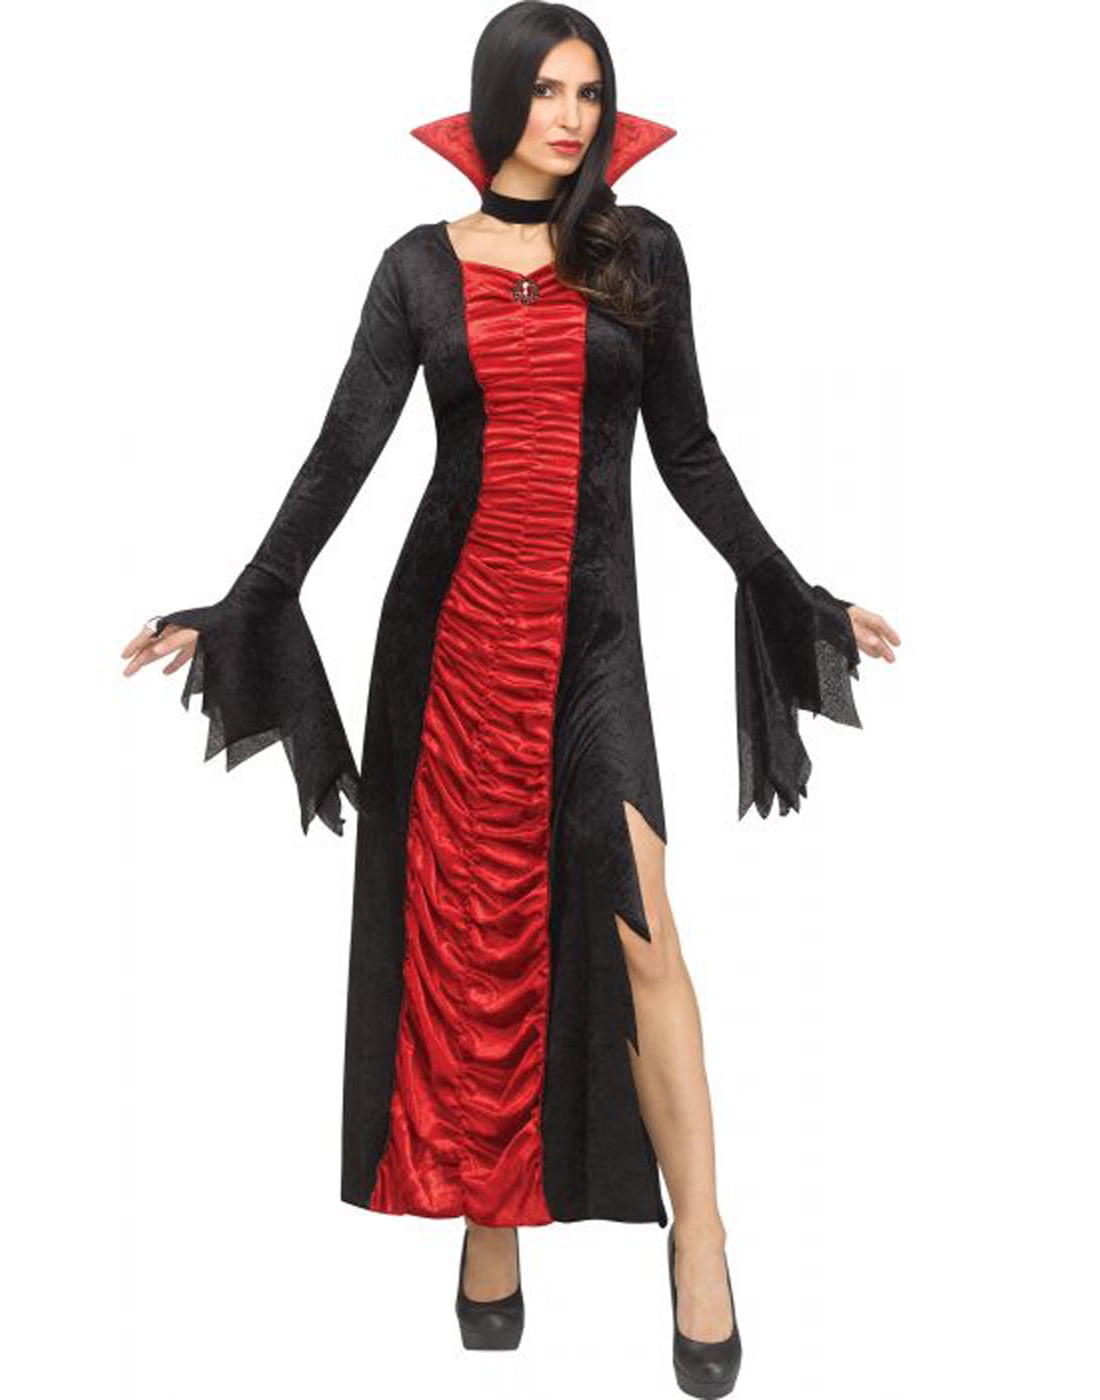 Bulk Dracula Fang Caps Vampire Halloween Adult Fancy Dress Accessory Job Lot 